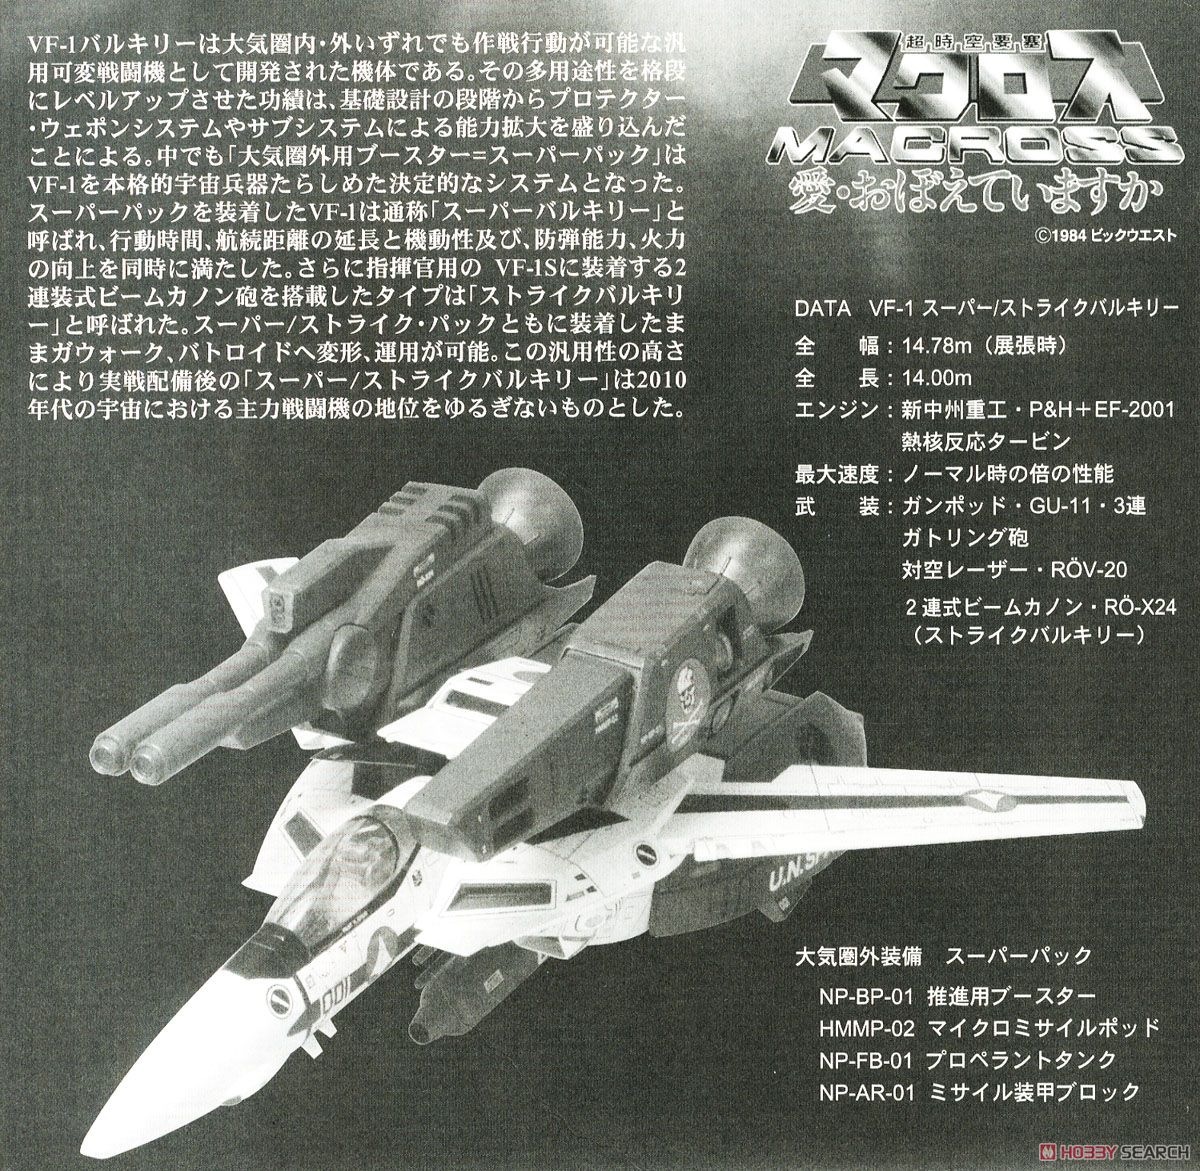 VF-1 スーパー/ストライクバルキリー (プラモデル) 解説1